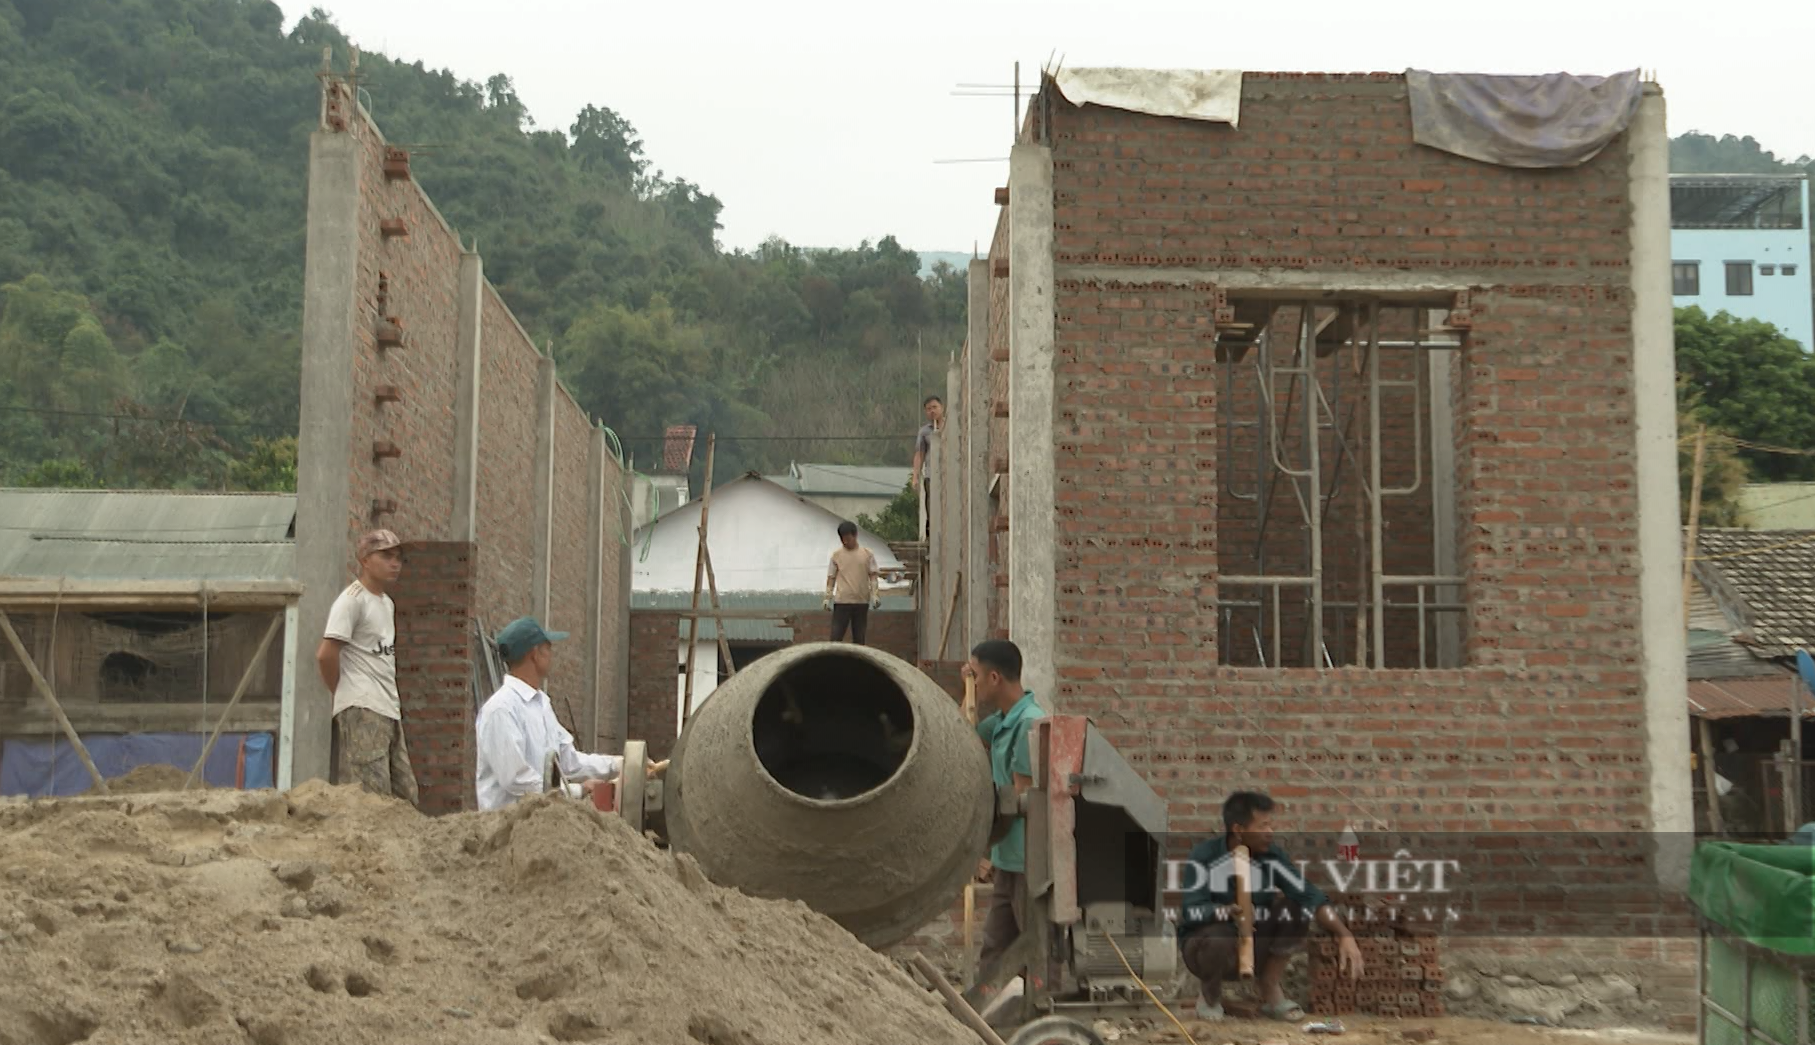 Xoá nhà tạm, nhà dột nát, một giải pháp căn cơ để giảm nghèo ở Lai Châu - Ảnh 3.